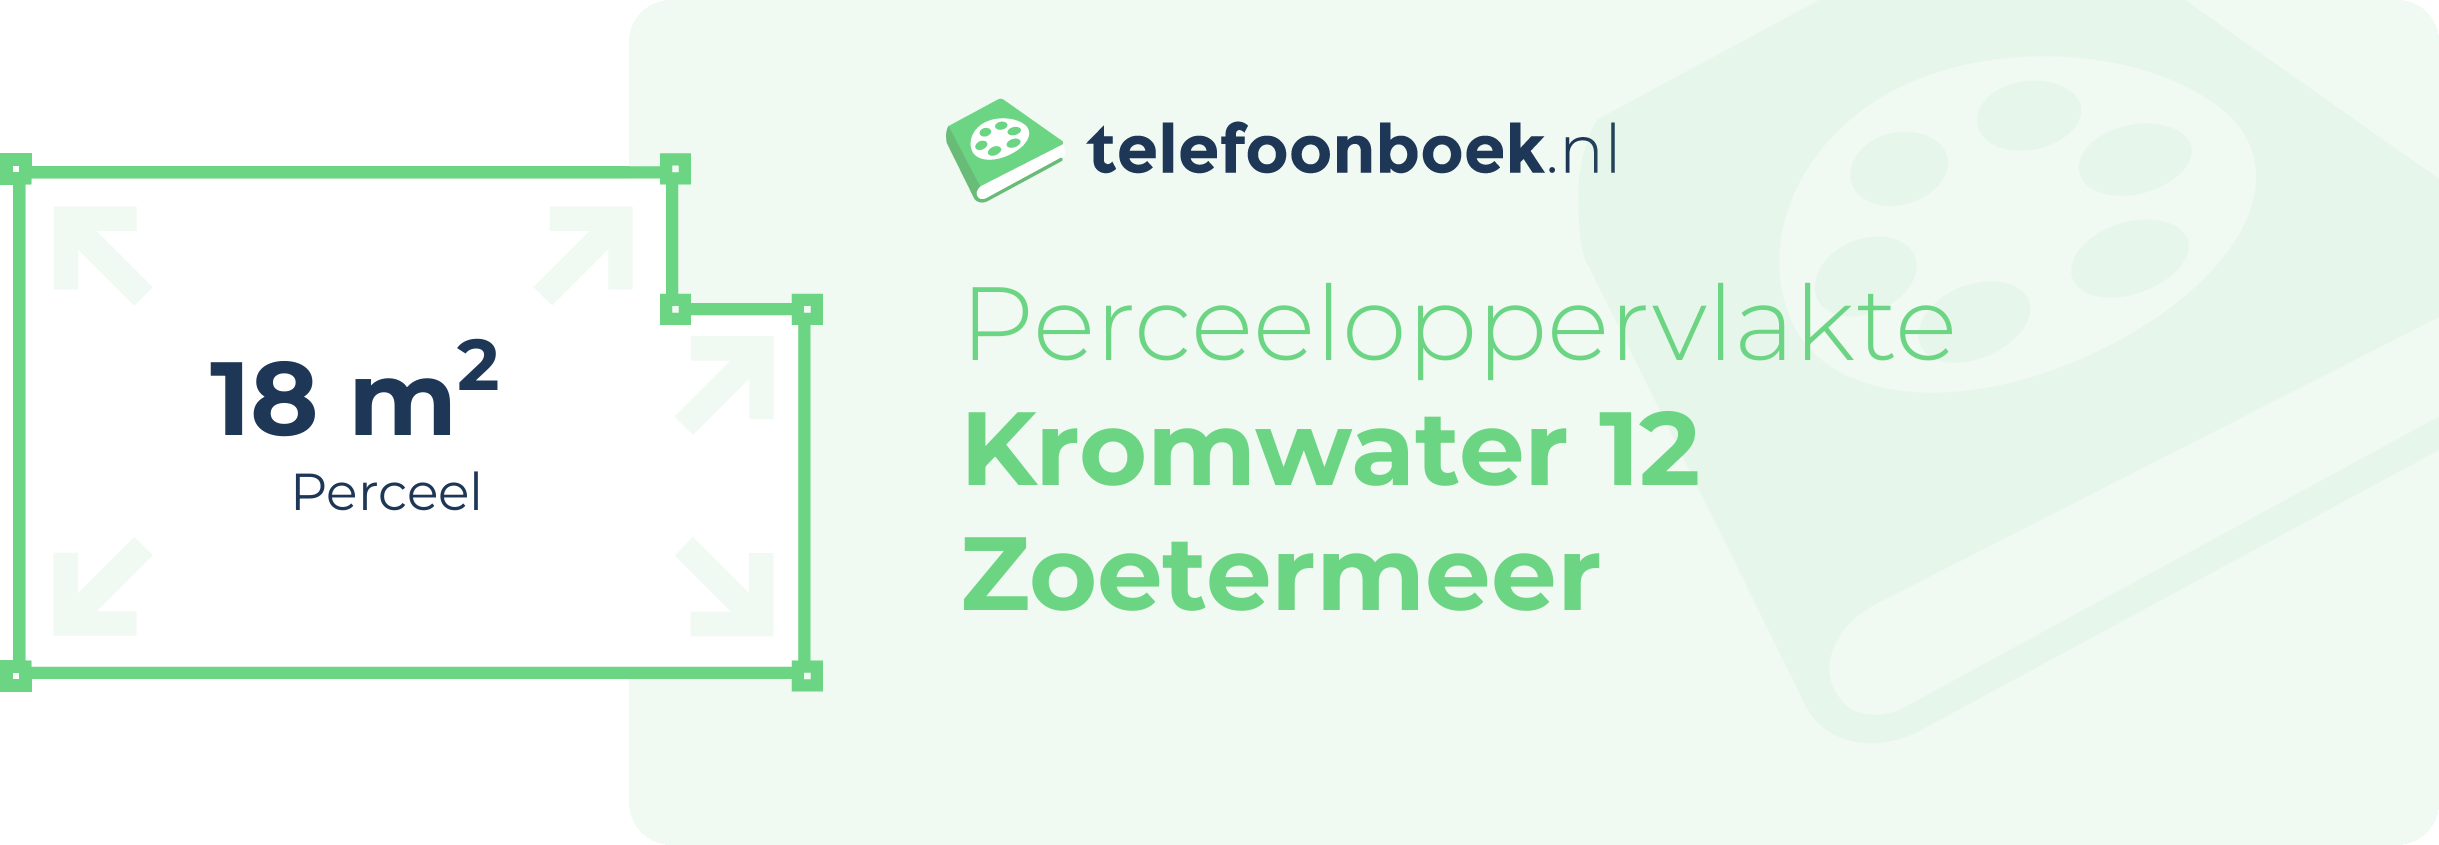 Perceeloppervlakte Kromwater 12 Zoetermeer